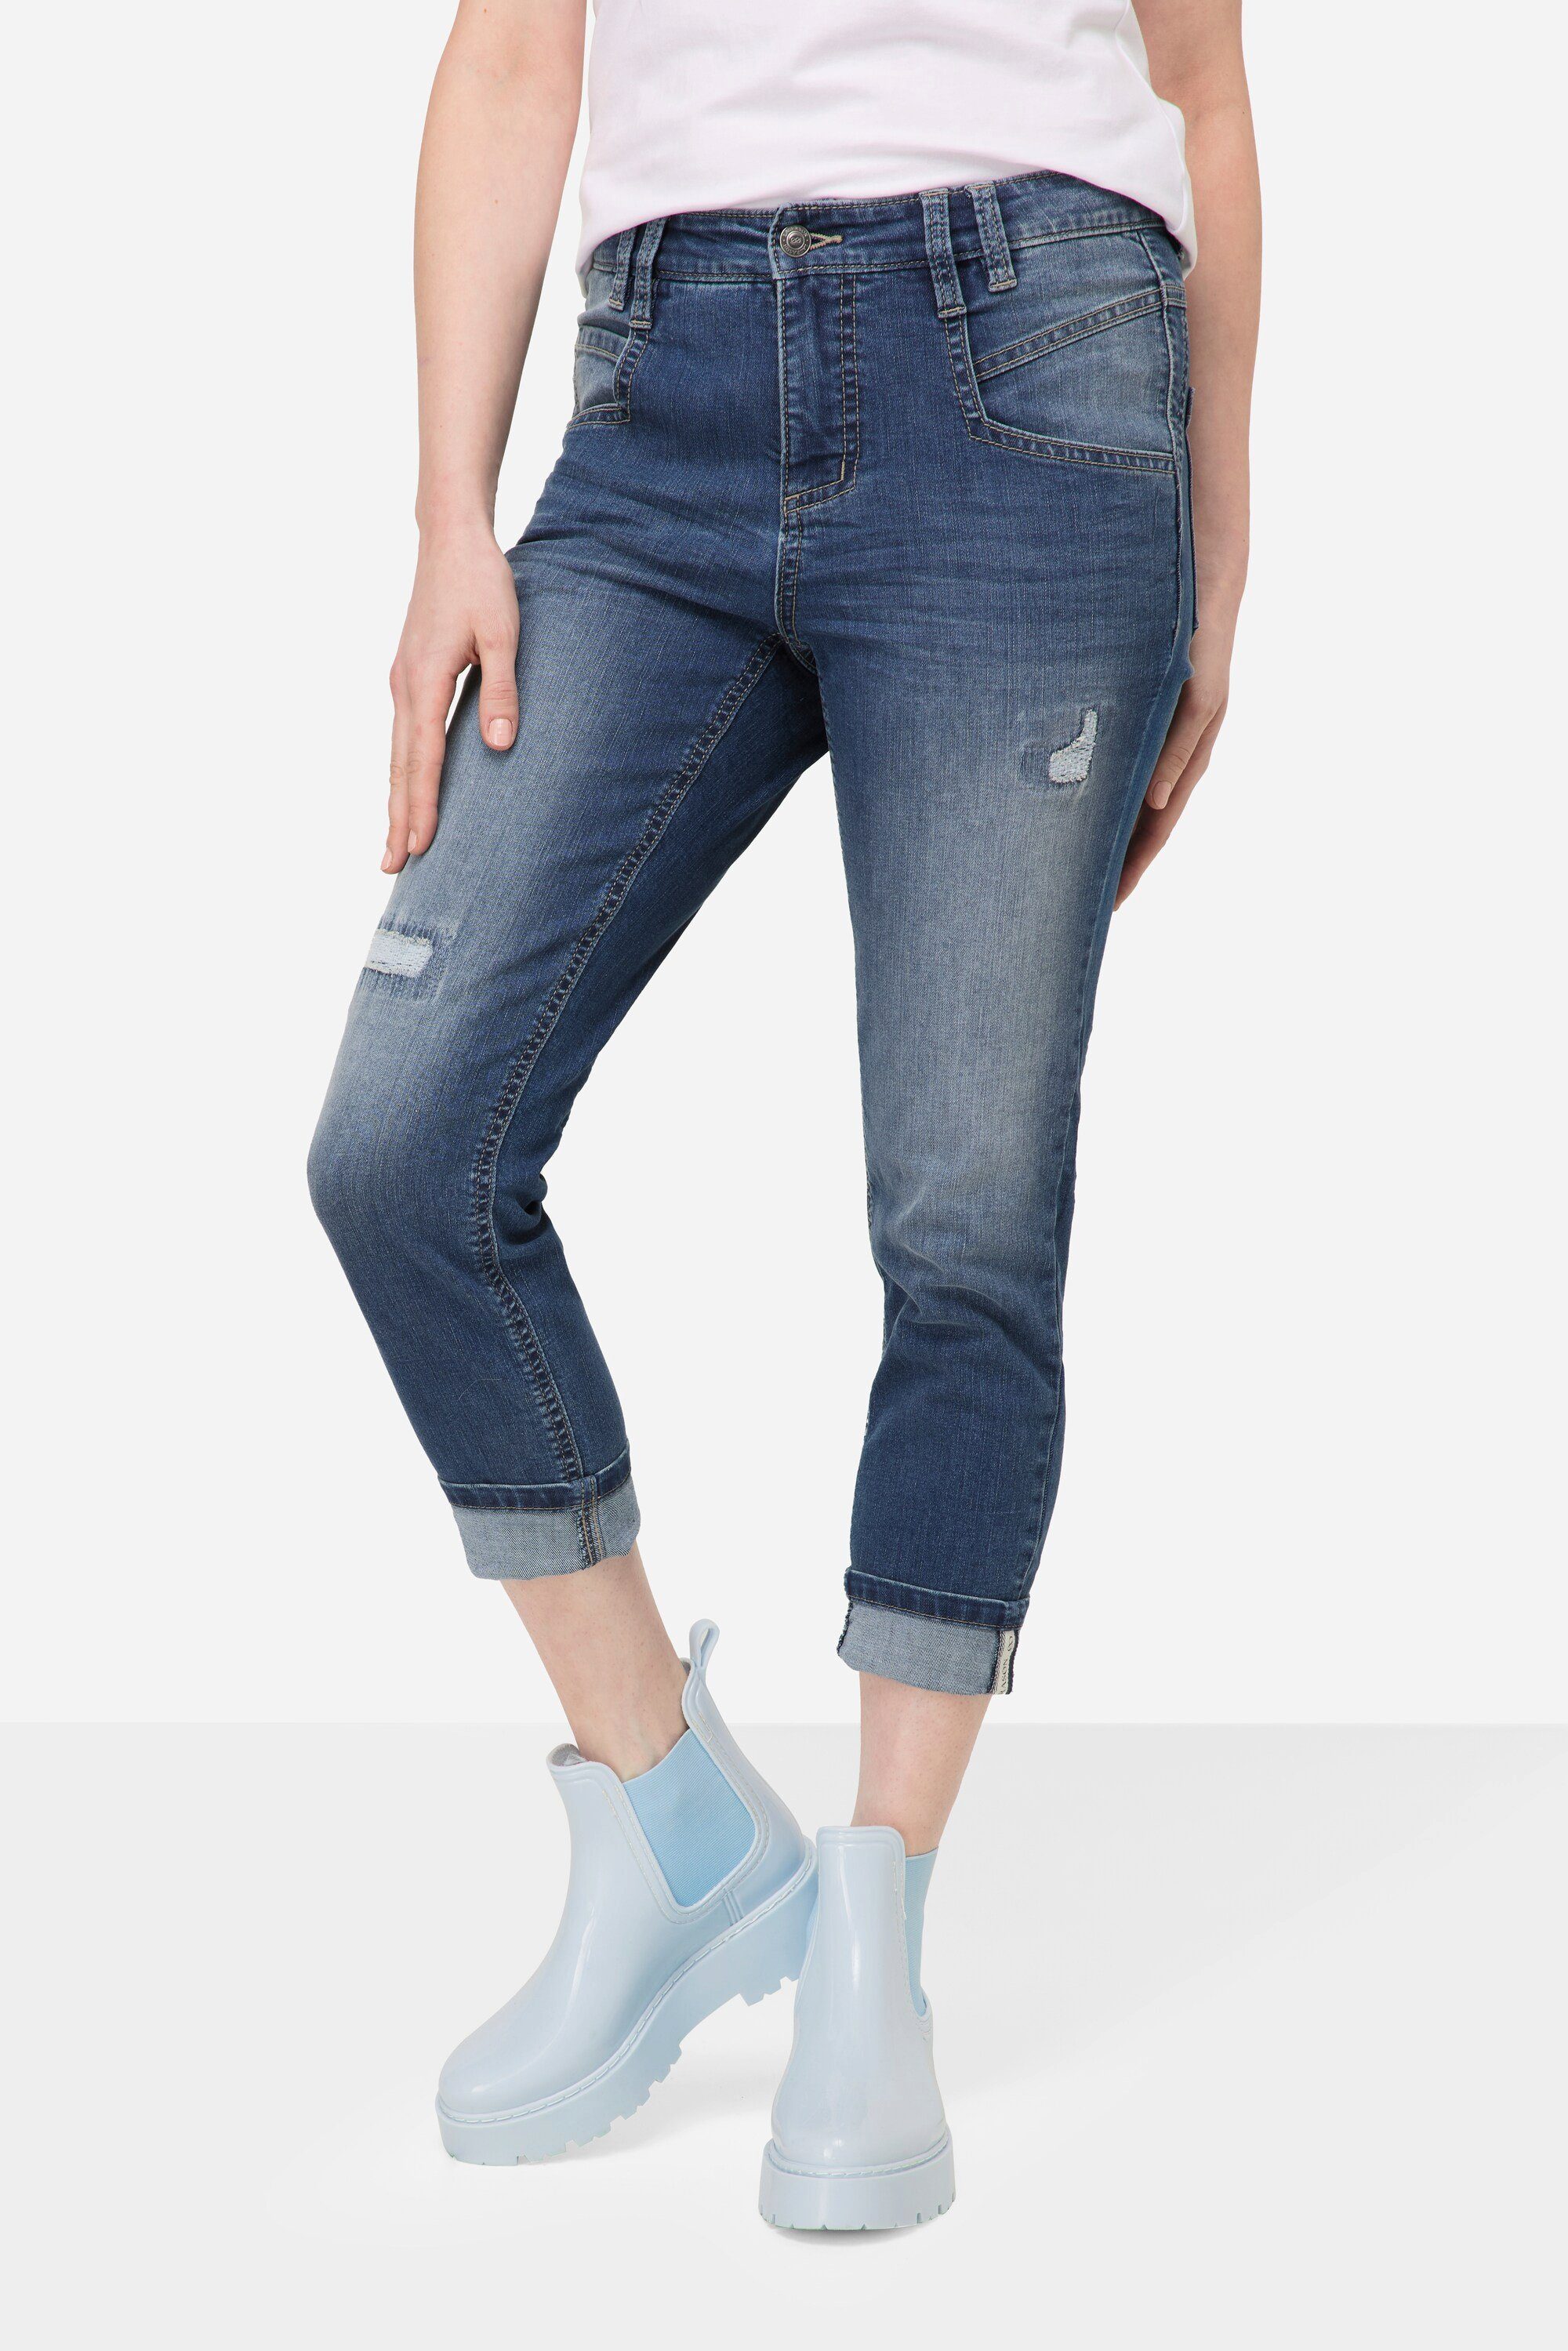 Laurasøn Regular-fit-Jeans 7/8-Jeans Destroy Slim Look 5-Pocket Fit